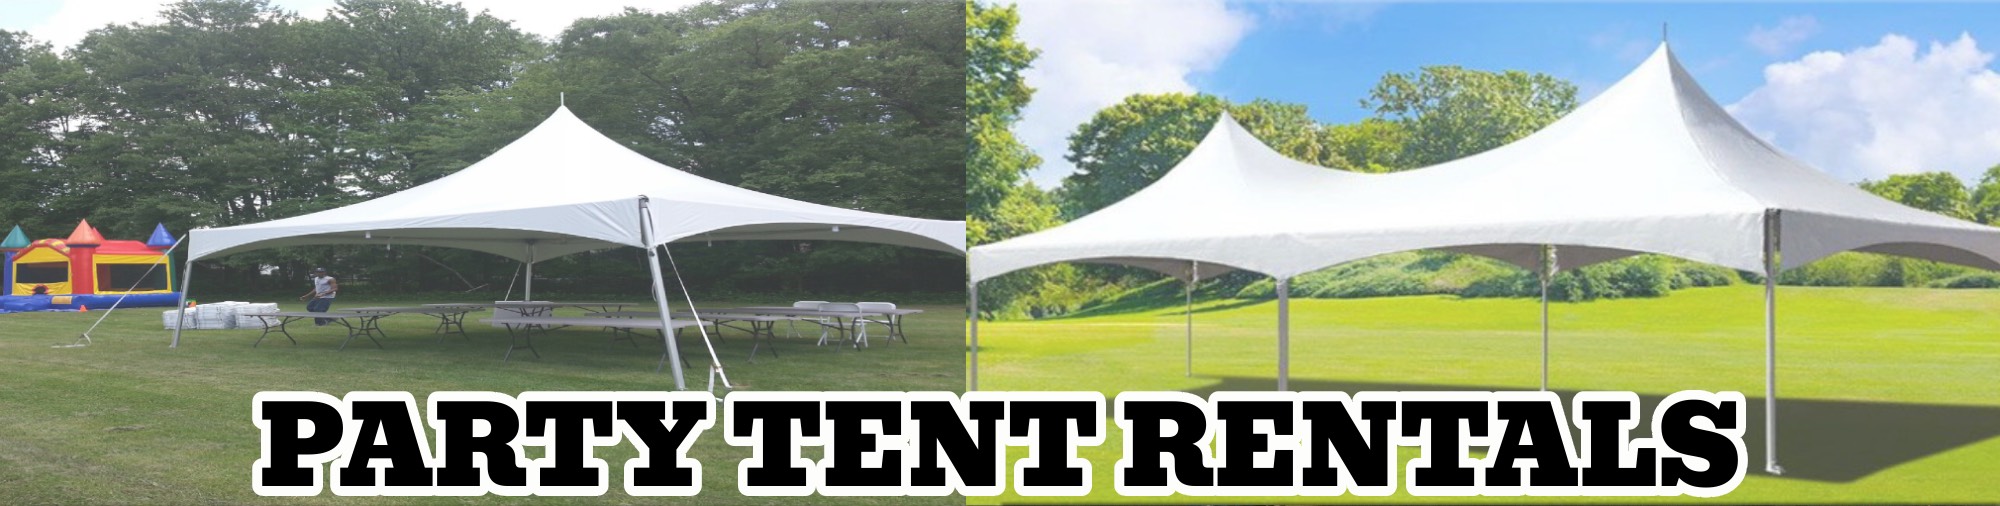 Party tents Rentals